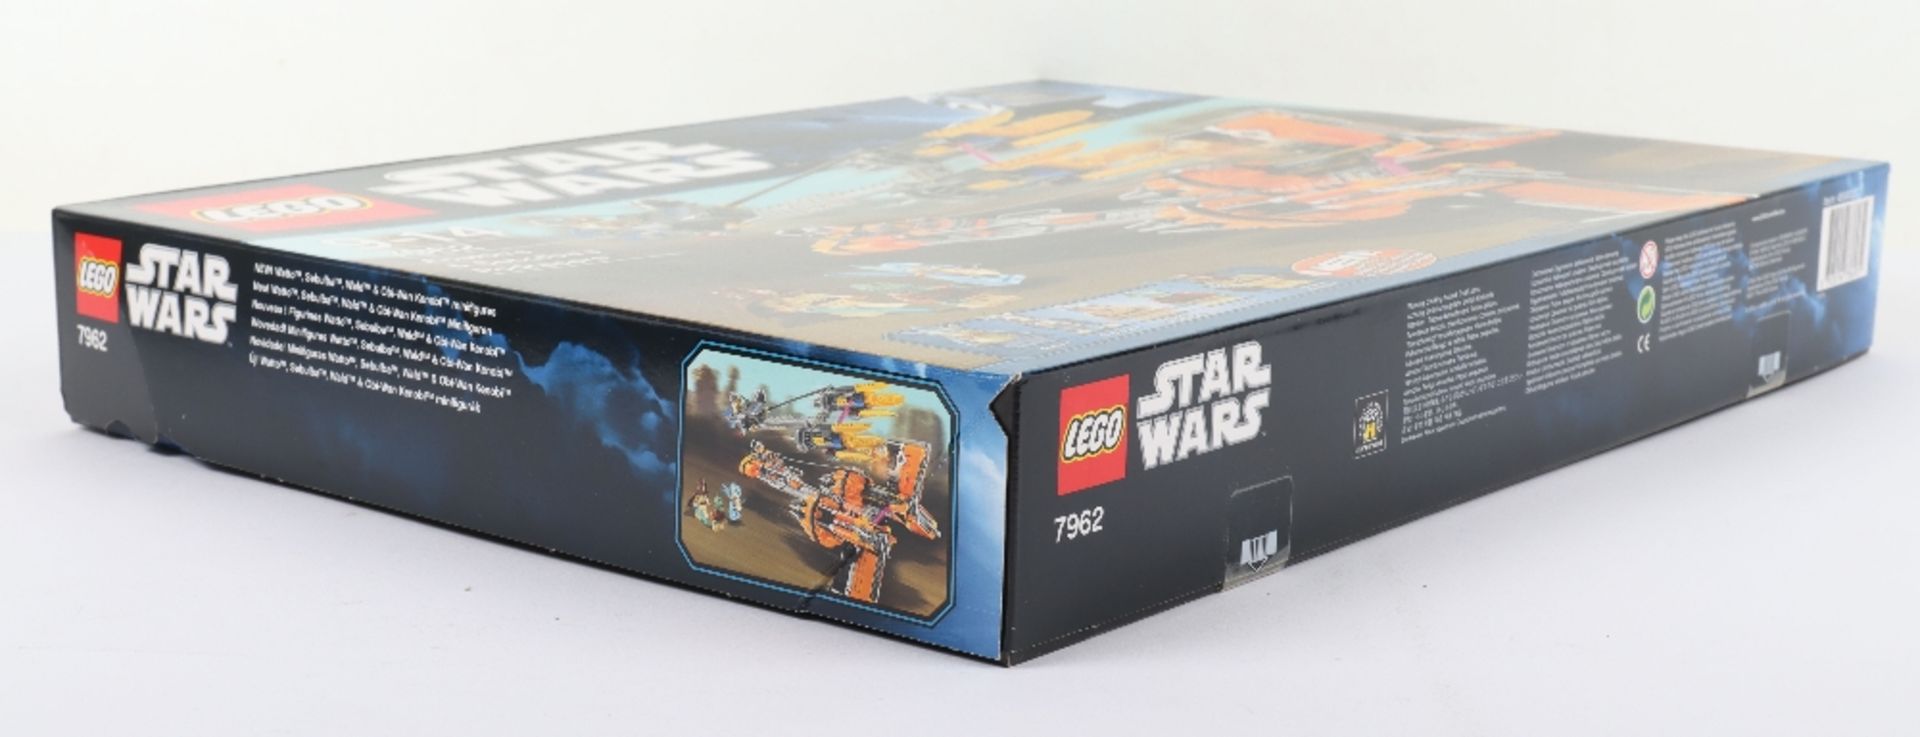 Lego Star Wars 7962 Anakin’s & Sebulba’s Podracers sealed boxed set - Image 3 of 7